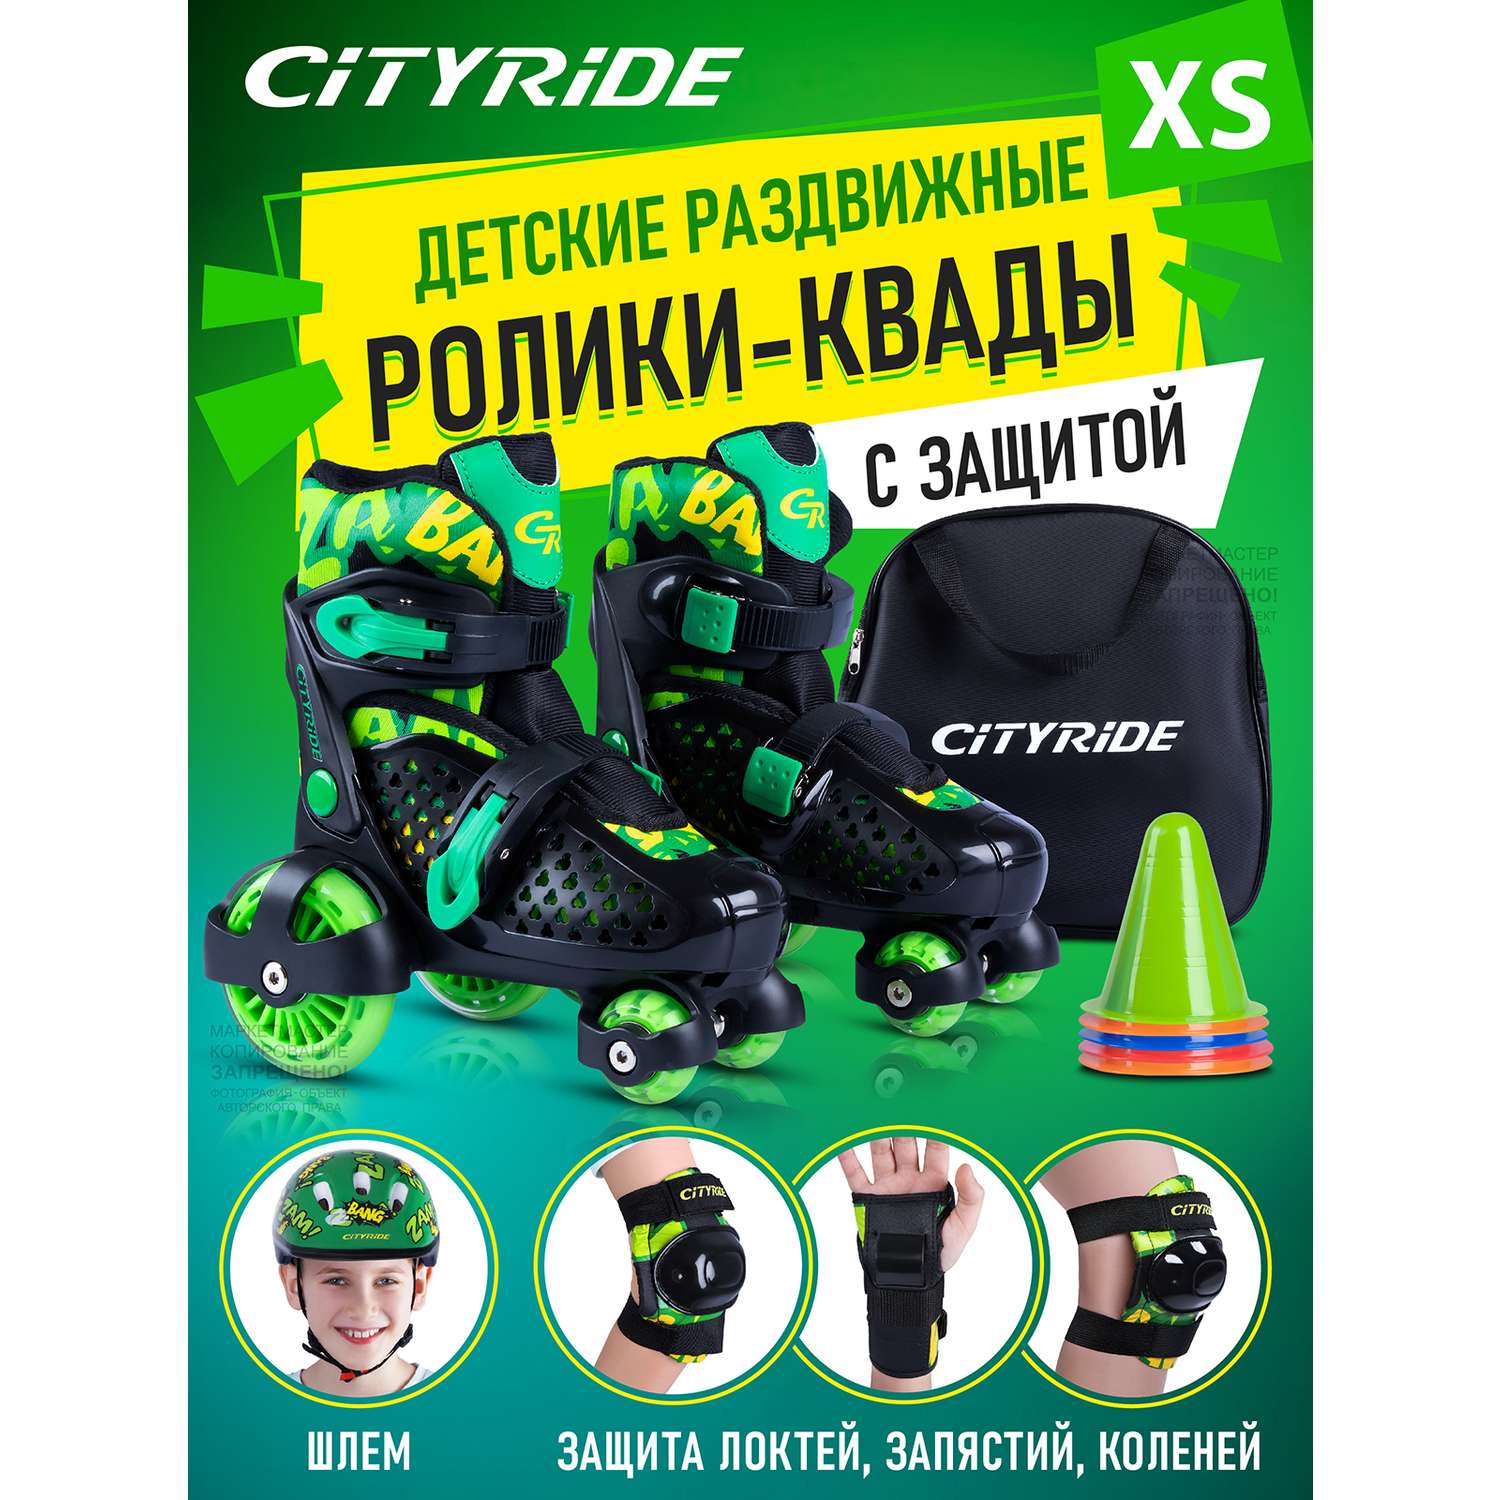 Комплект для катания CITYRIDE Роликовые коньки-квады шлем защита пластиковый мысок колёса PU 80 и 40 мм - фото 1